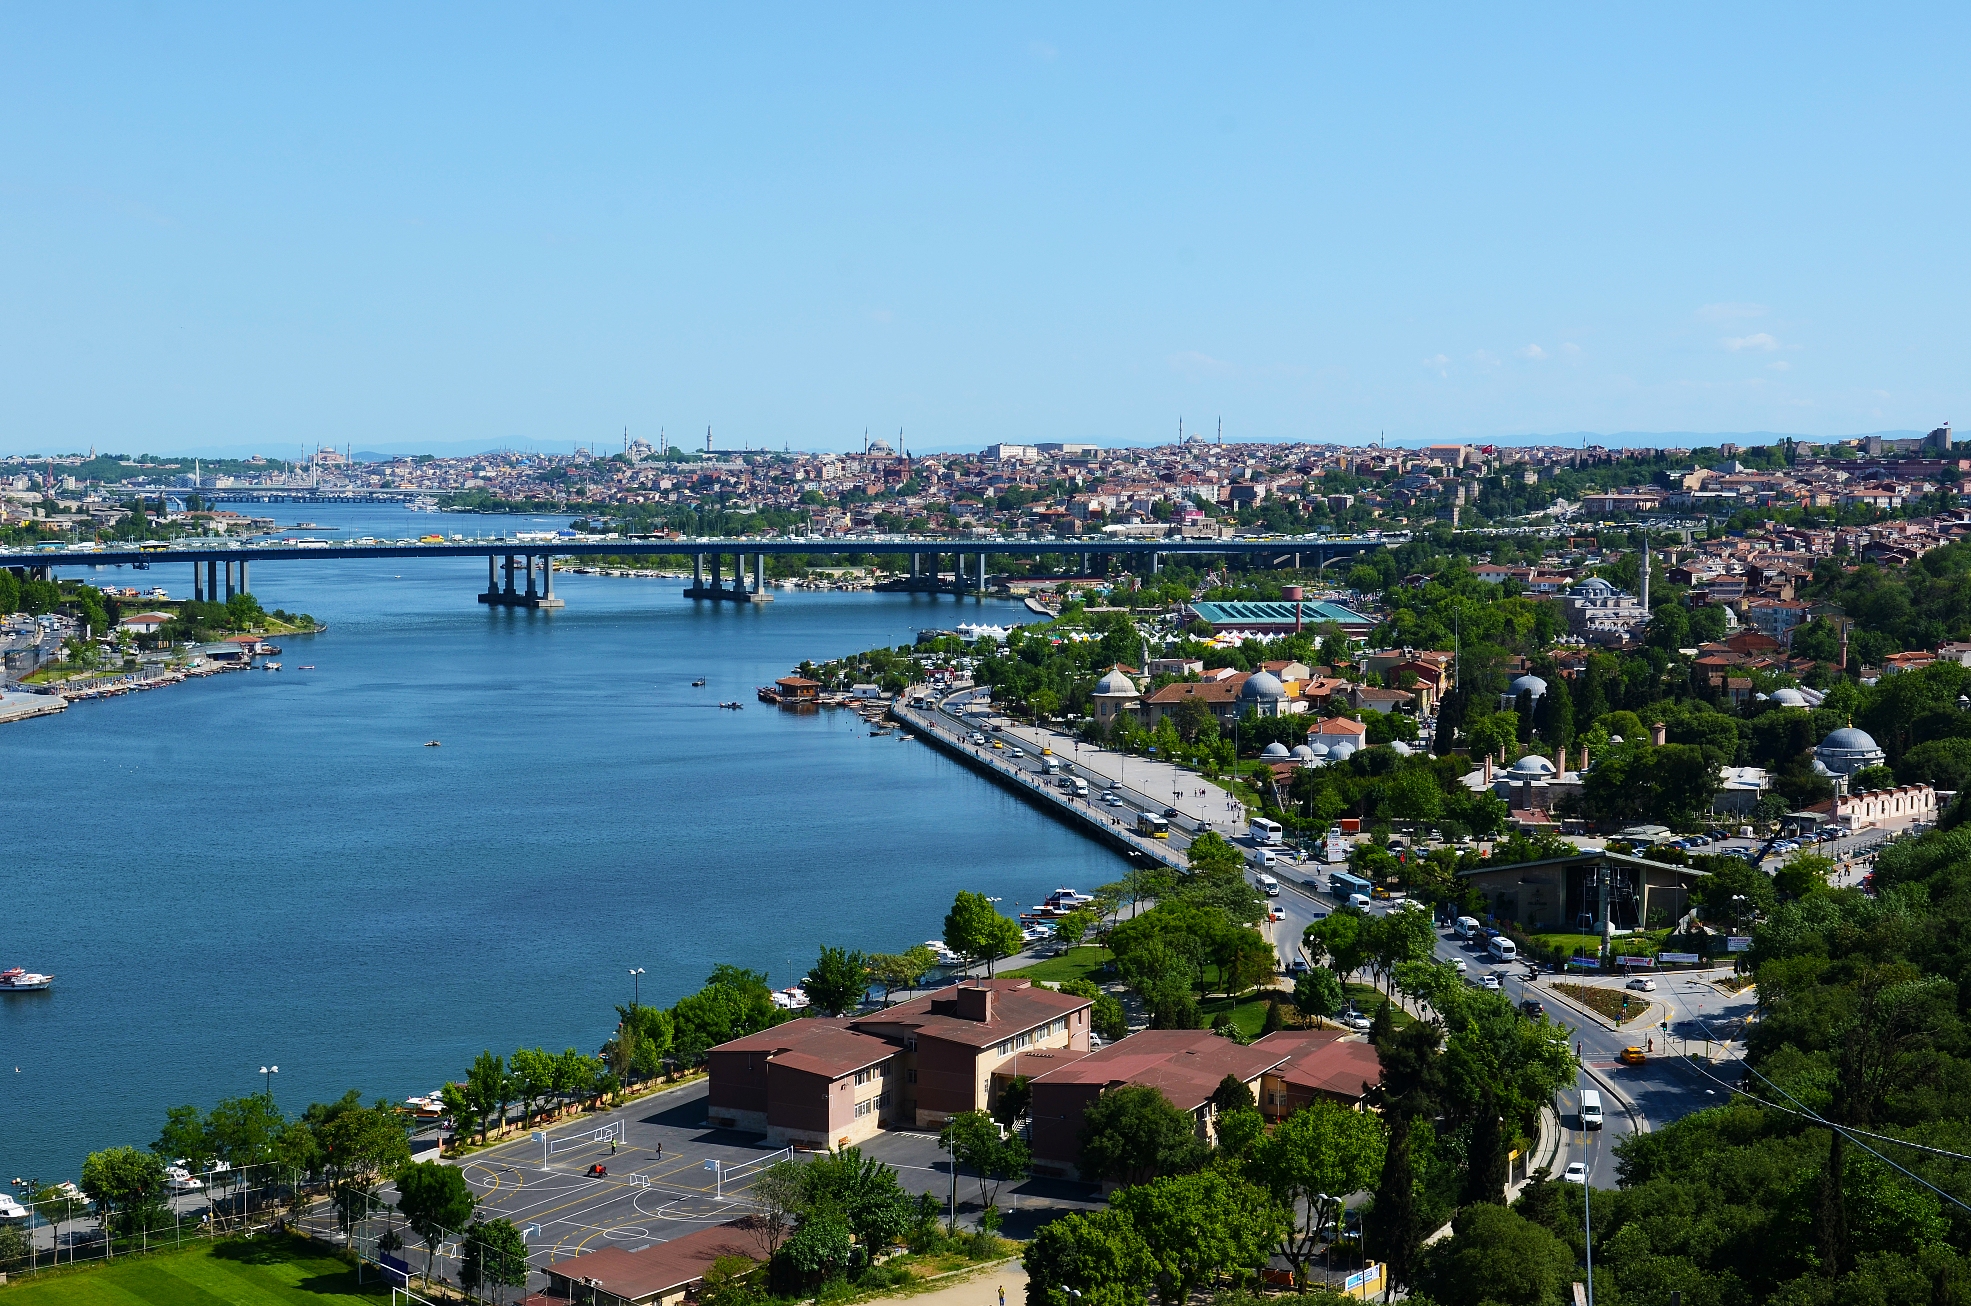 土耳其总统决定实施伊斯坦布尔运河项目,150亿美元?750亿美元?